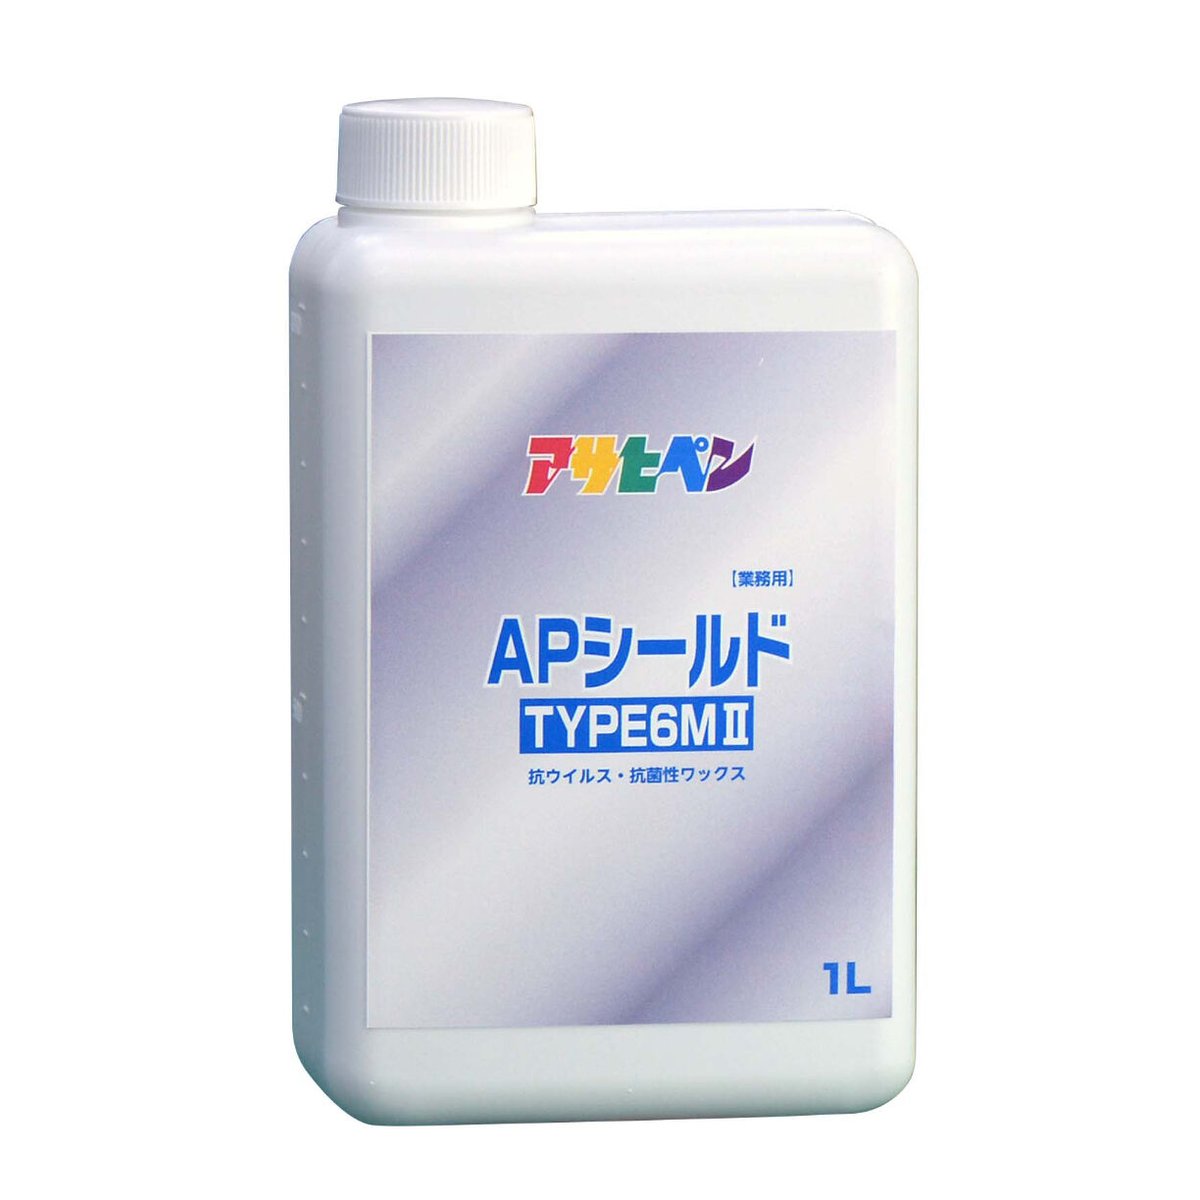 APシールド TYPE6MⅡ 業務用 1L 抗ウイルス 抗菌性ワックス コーティング A...